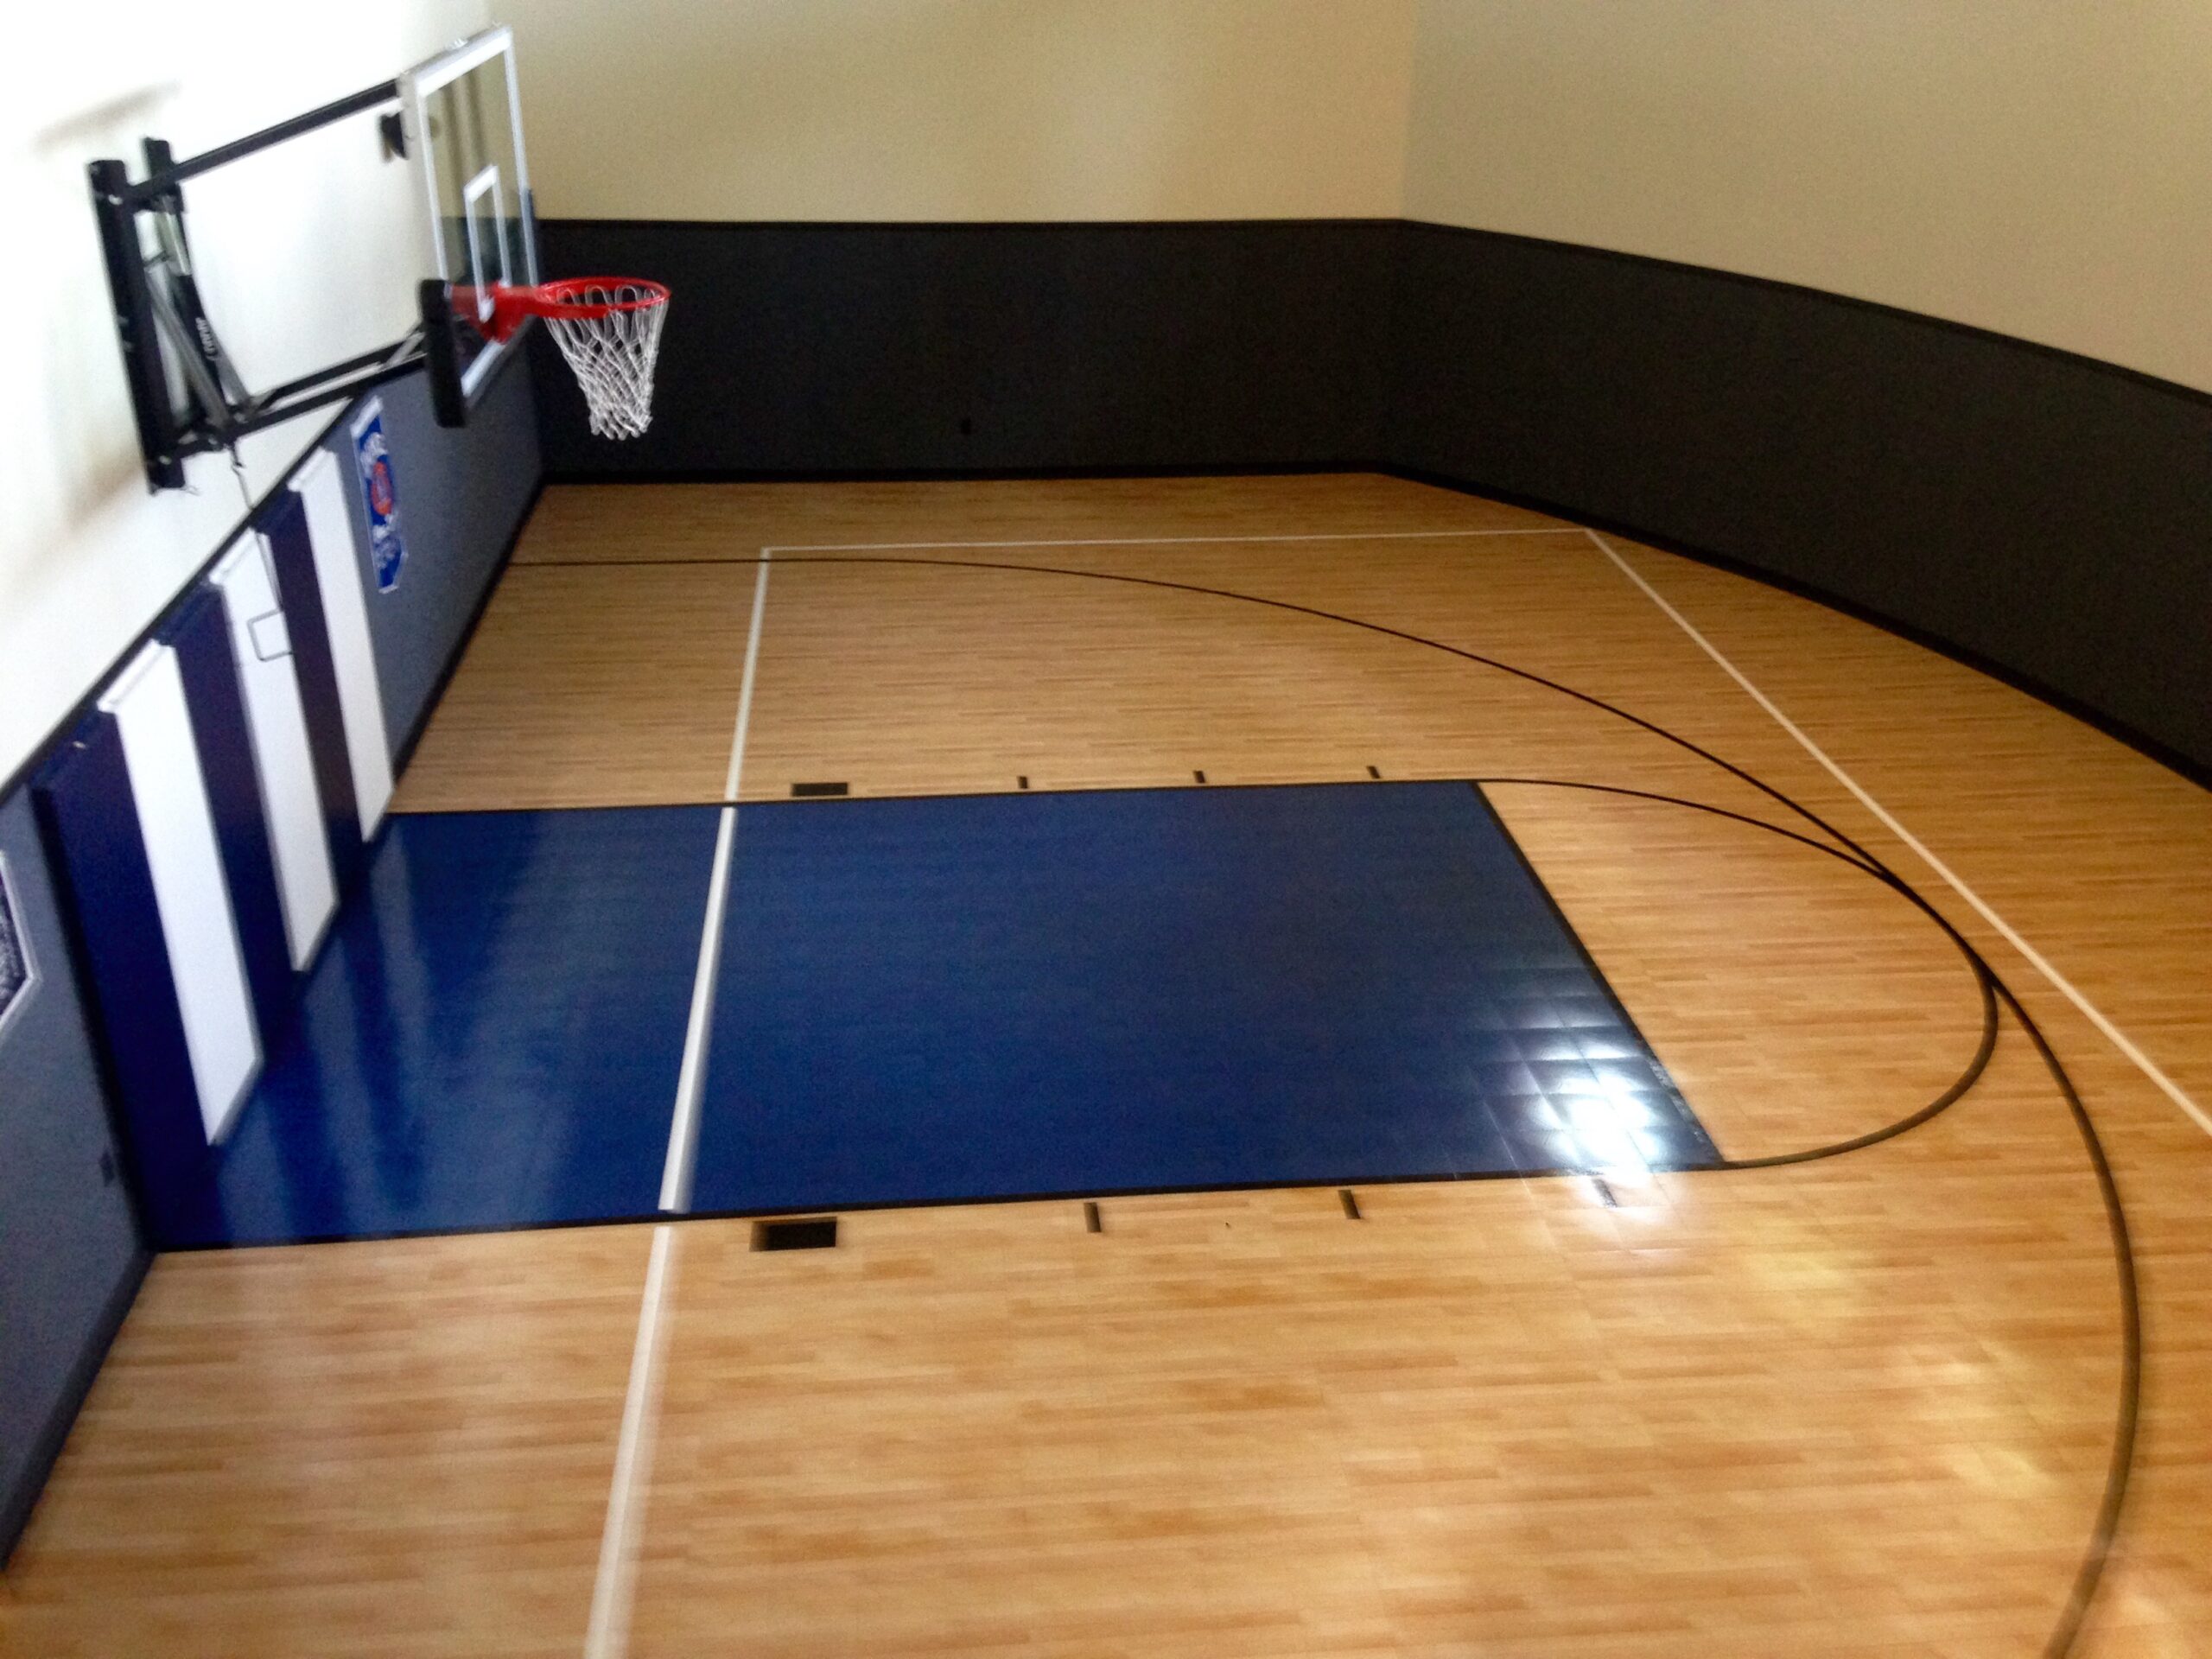 Hütte Wahrnehmung Phänomen indoor courts basketball Ausrichtung